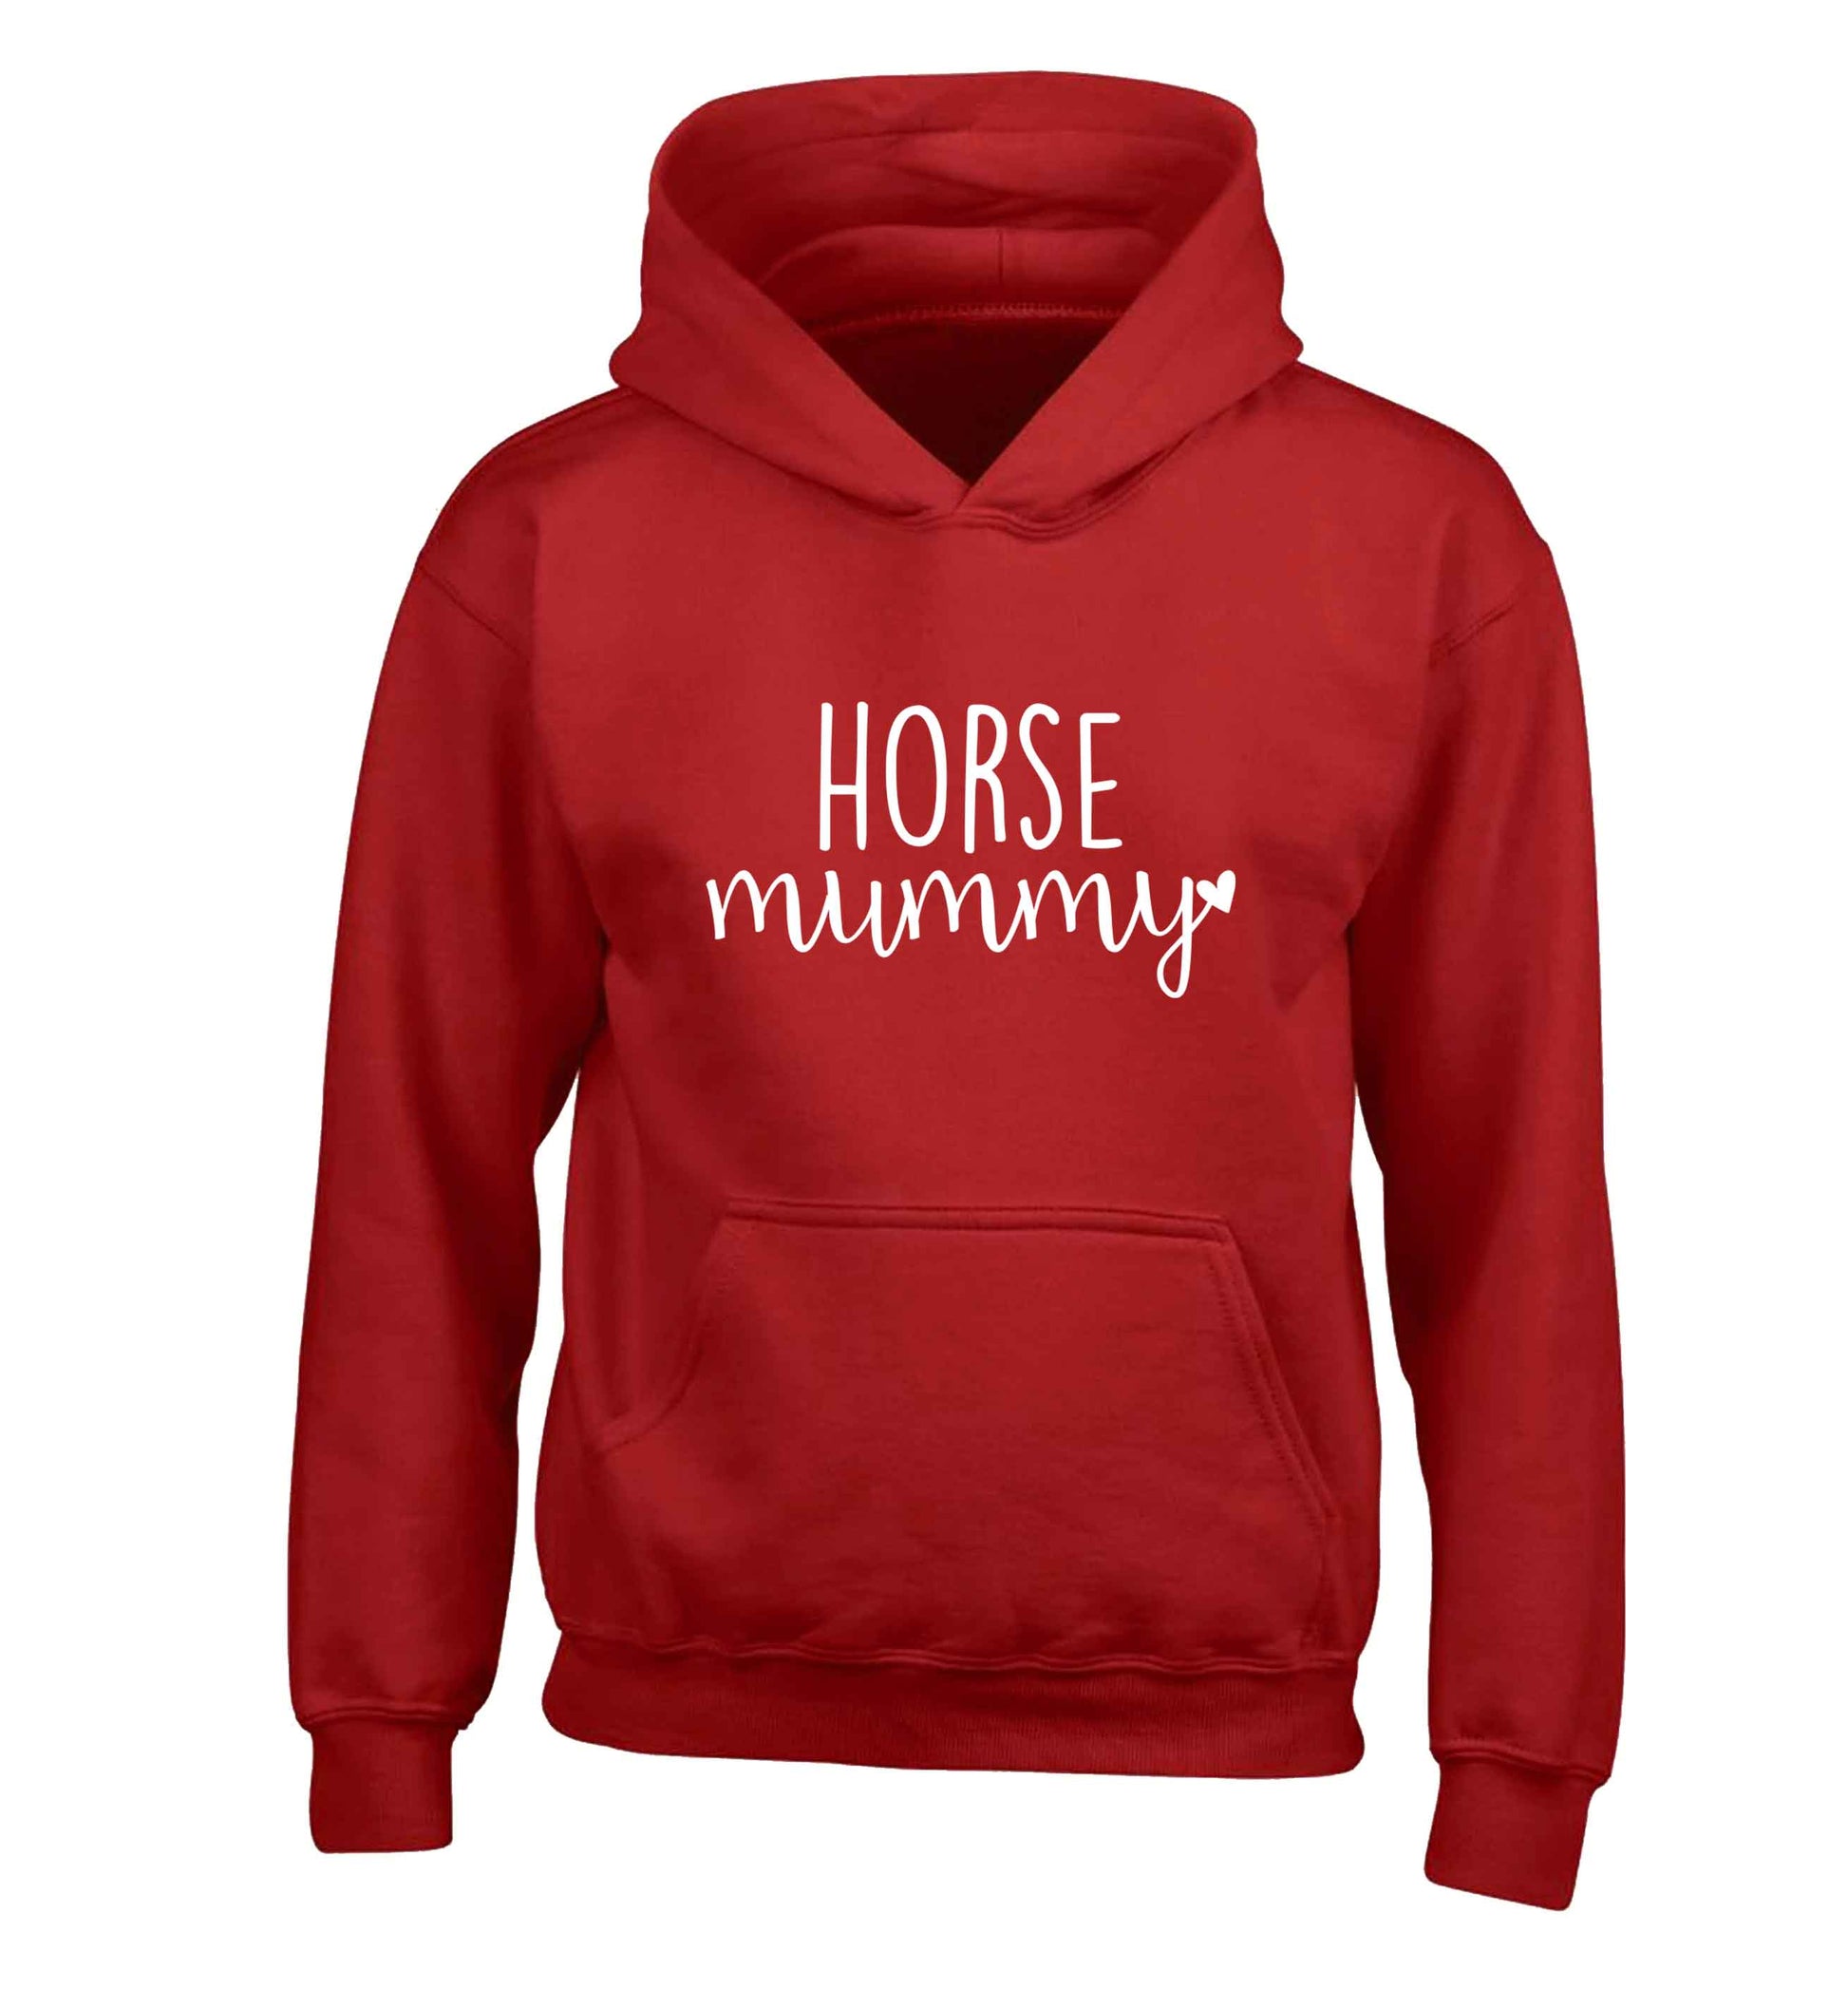 Horse mummy children's red hoodie 12-13 Years